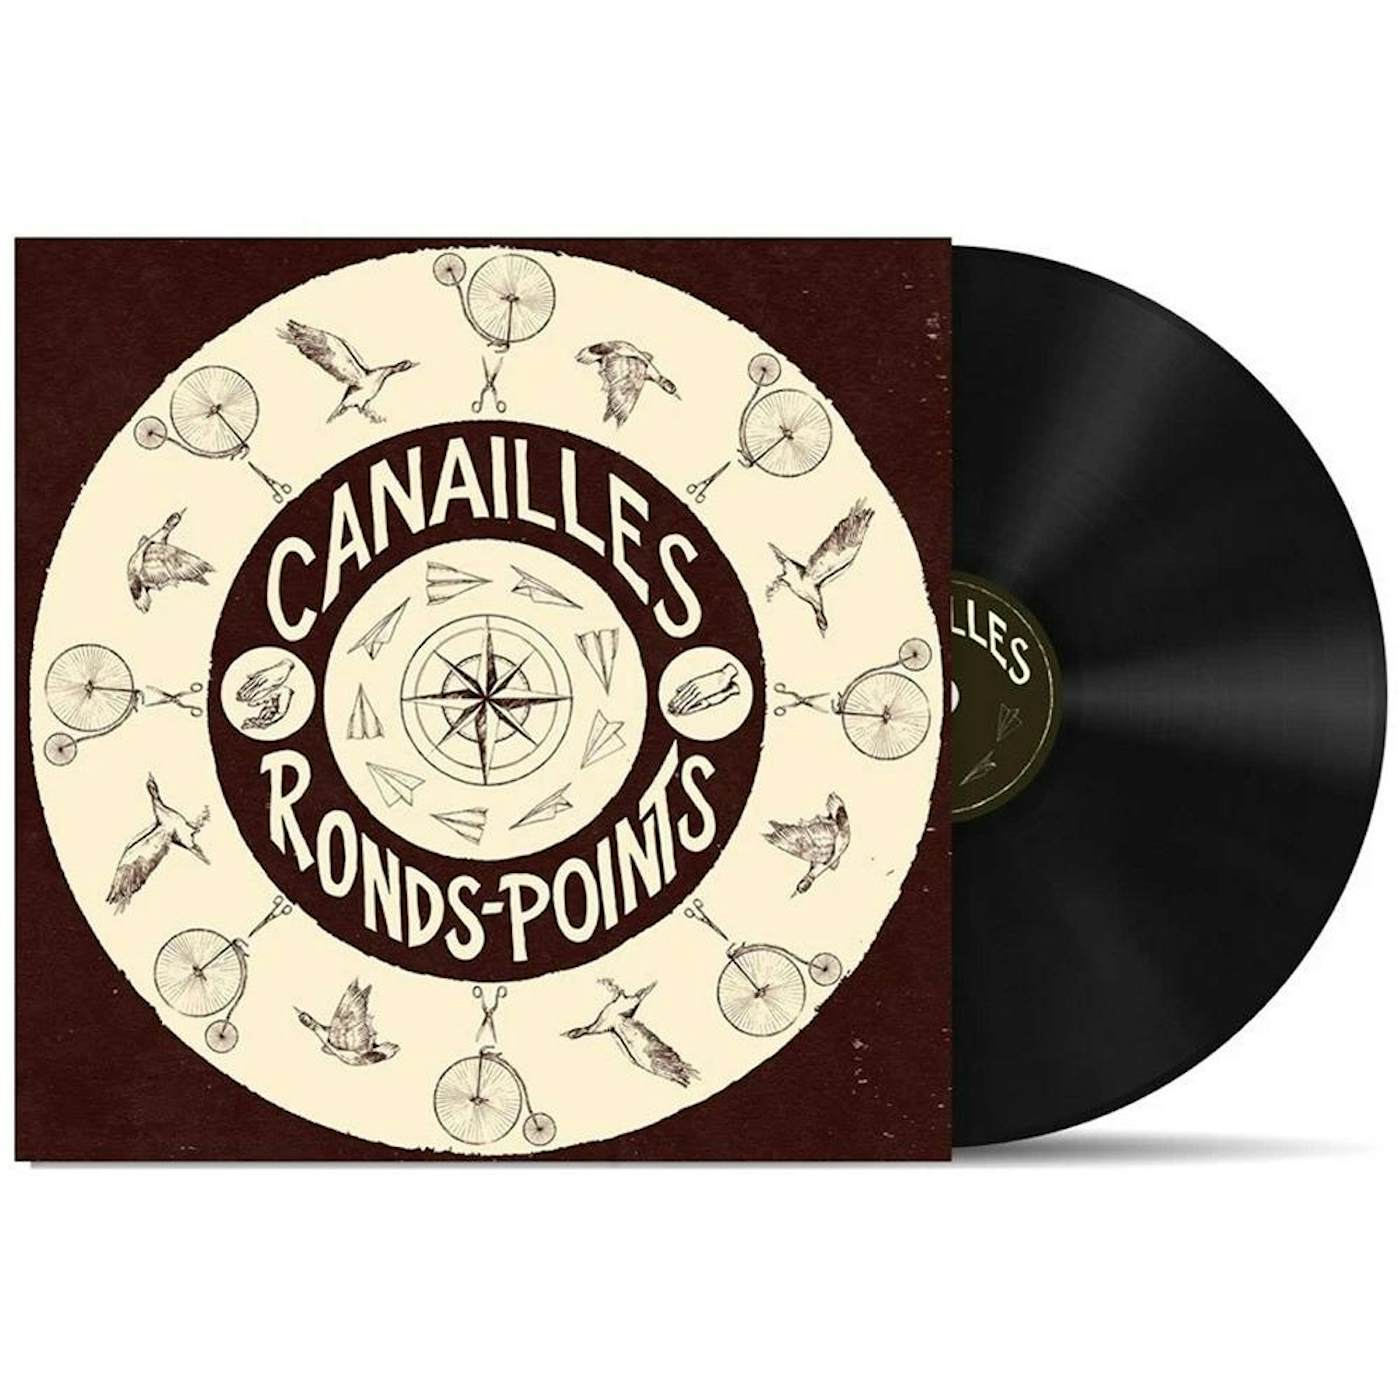 Canailles / Ronds-points - LP Vinyl